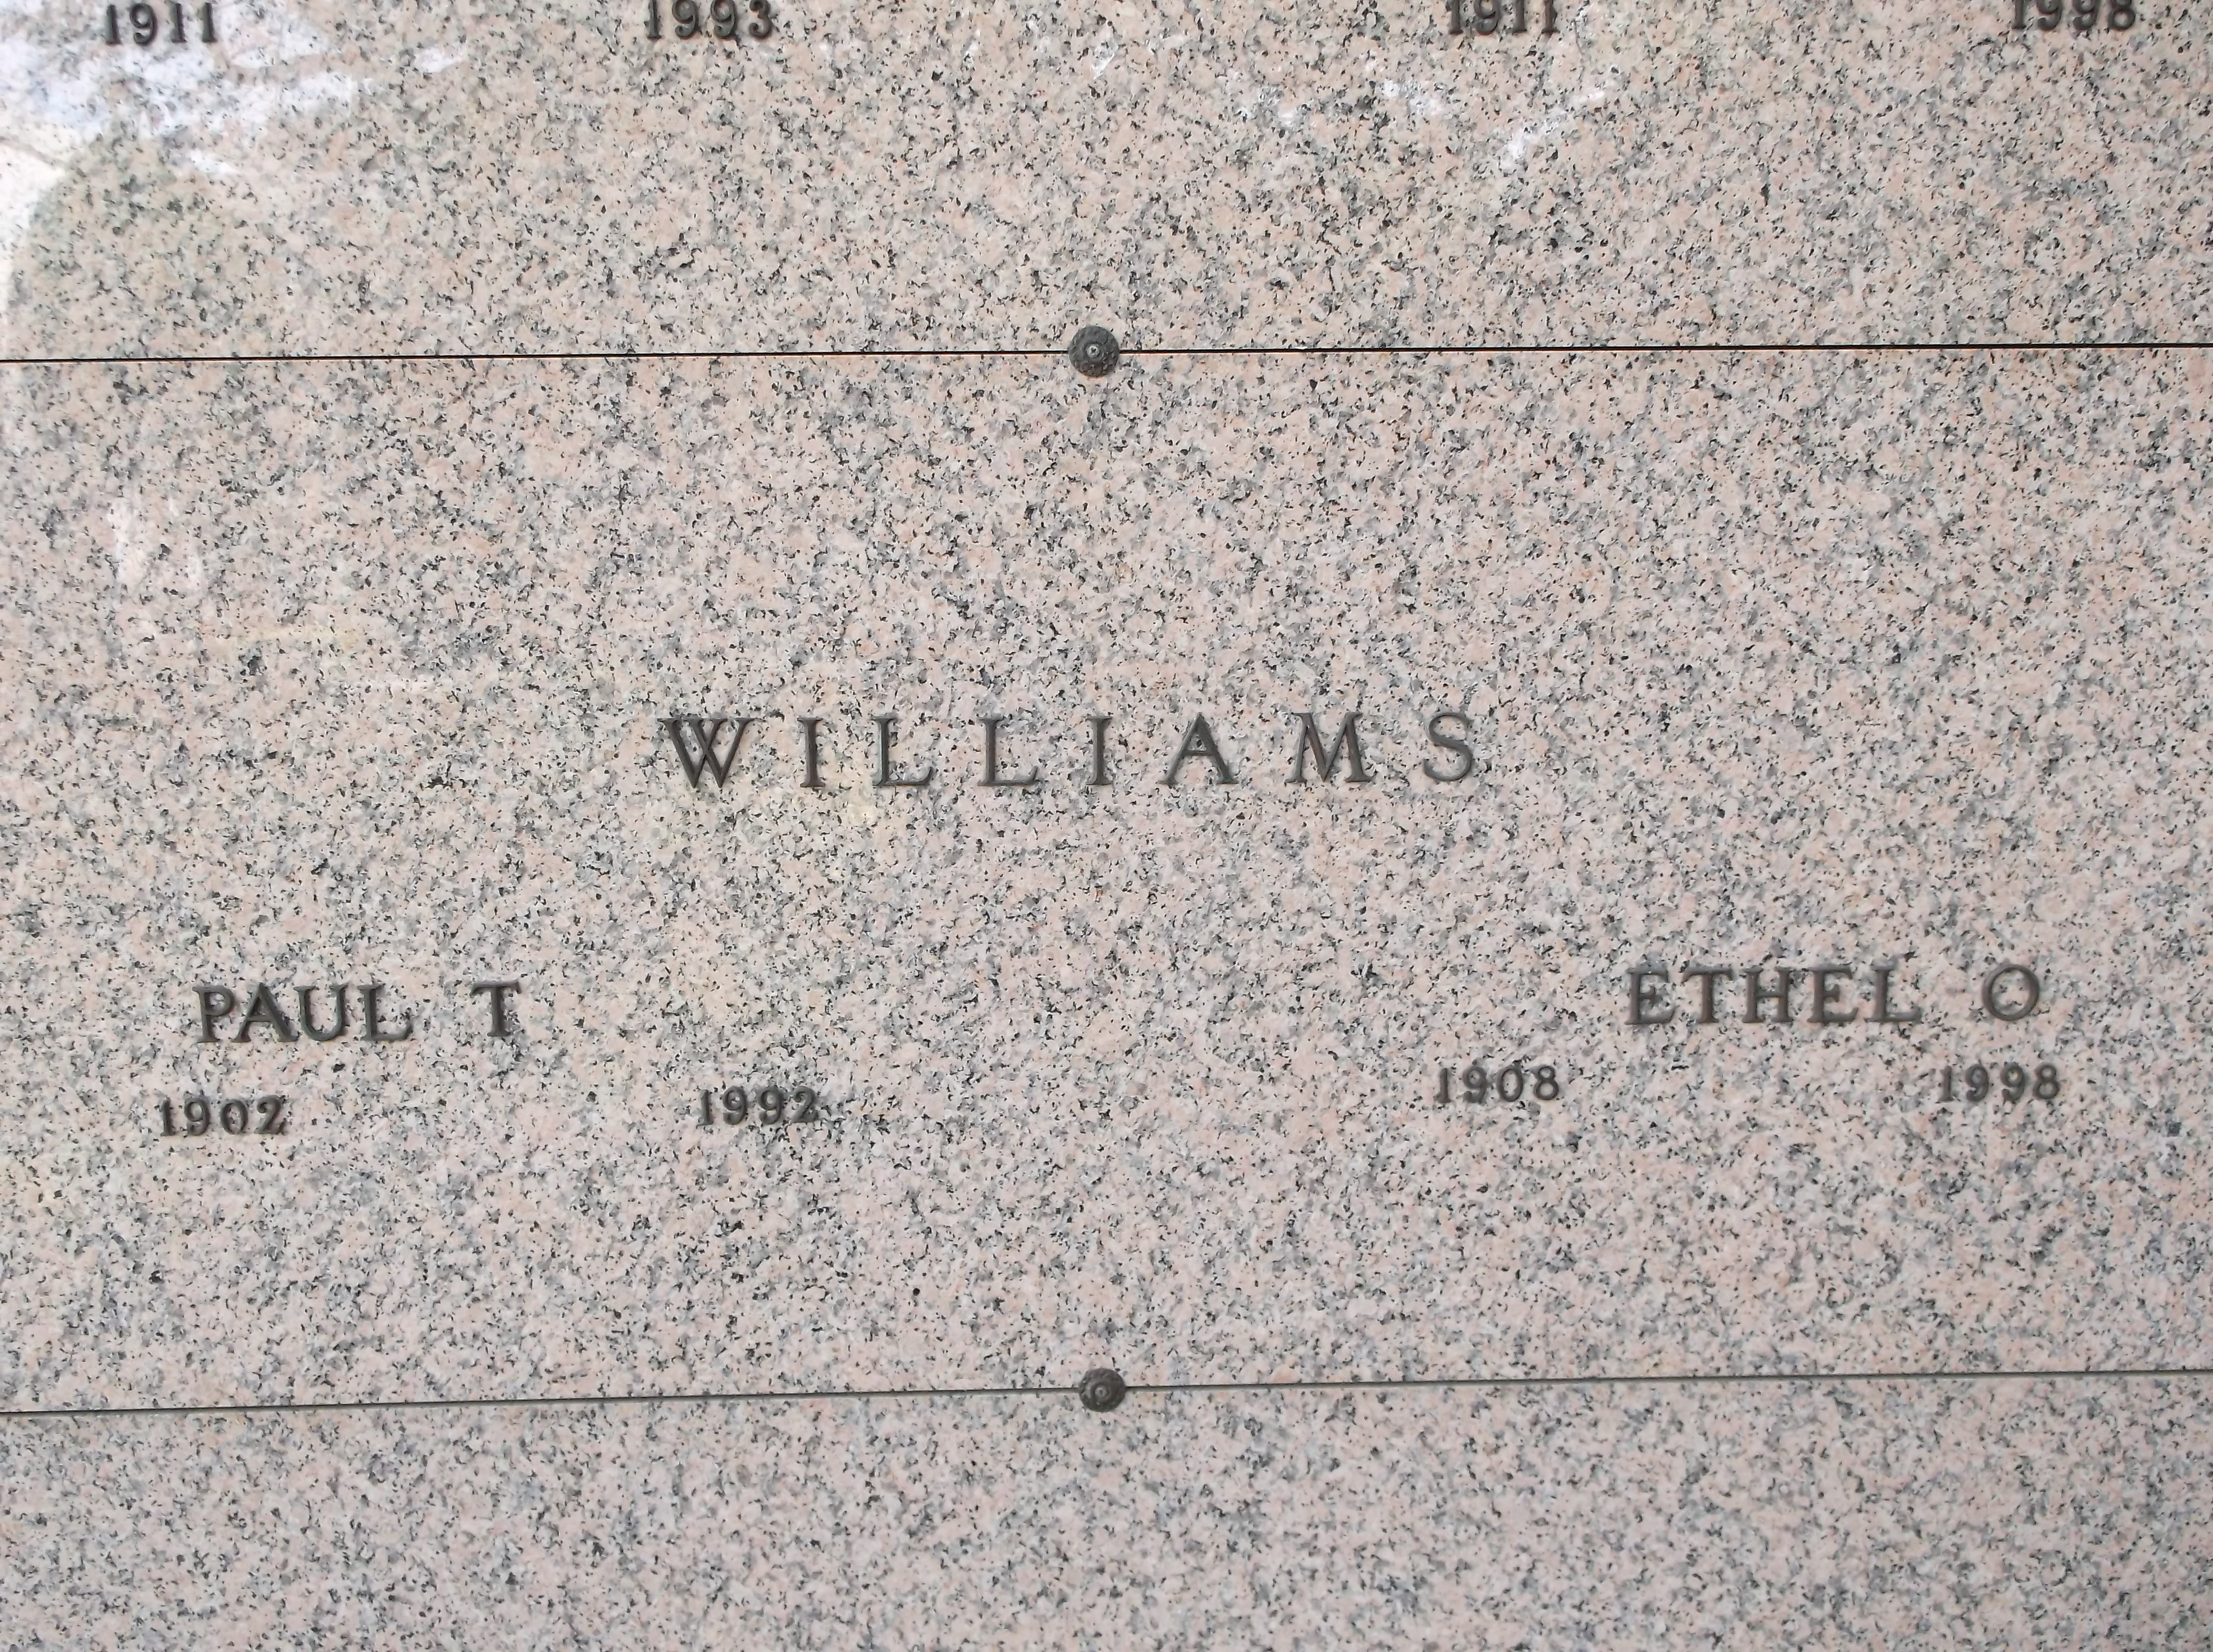 Ethel O Williams